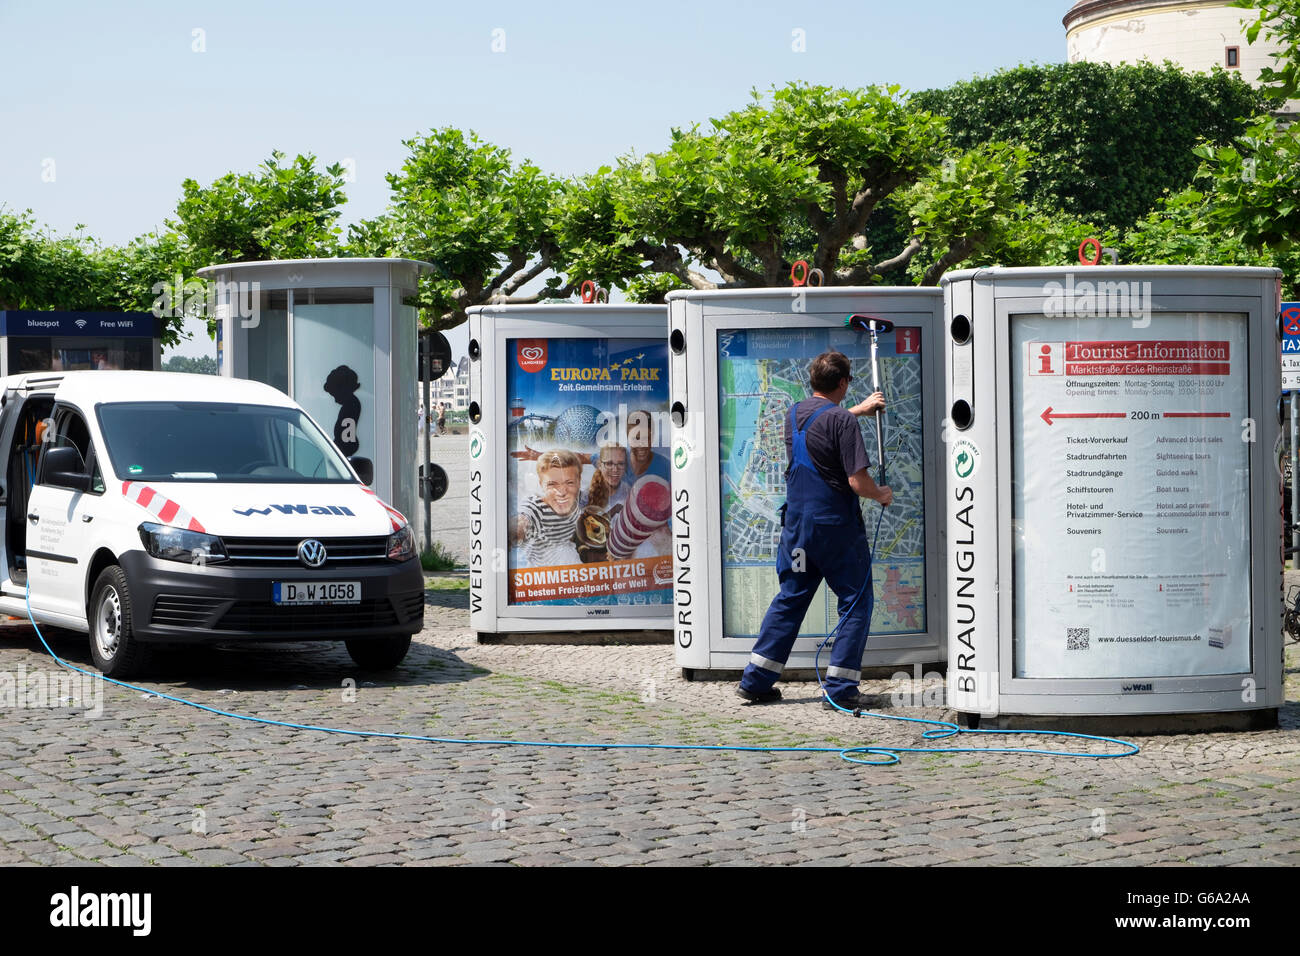 Panneaux publicitaires automatisés mural avec bouteille banques, Düsseldorf, Allemagne. Banque D'Images